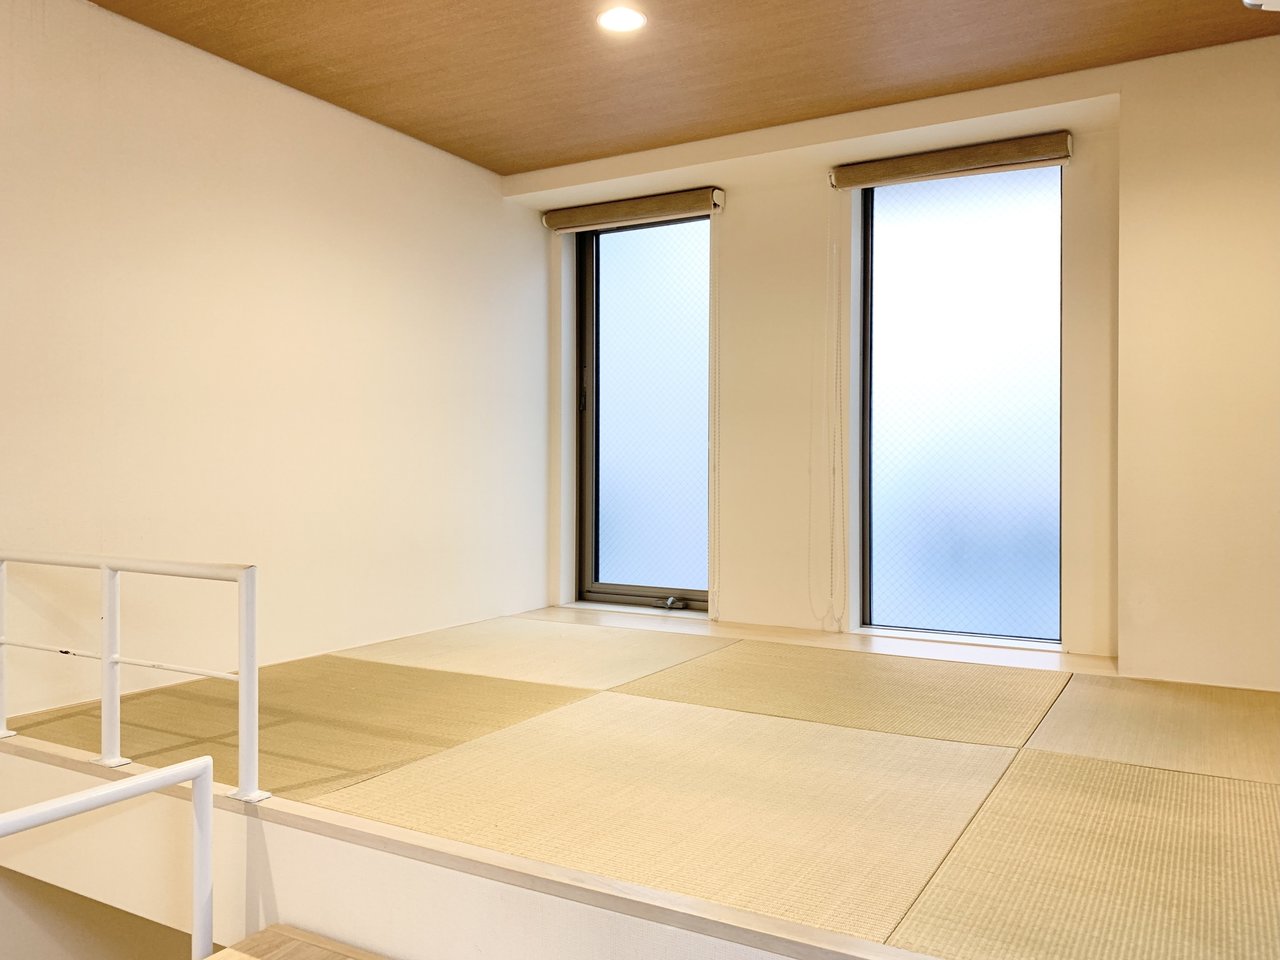 ステップの先は琉球畳の和室になっています。くつろぎの場や書斎としても集中できそうですね。